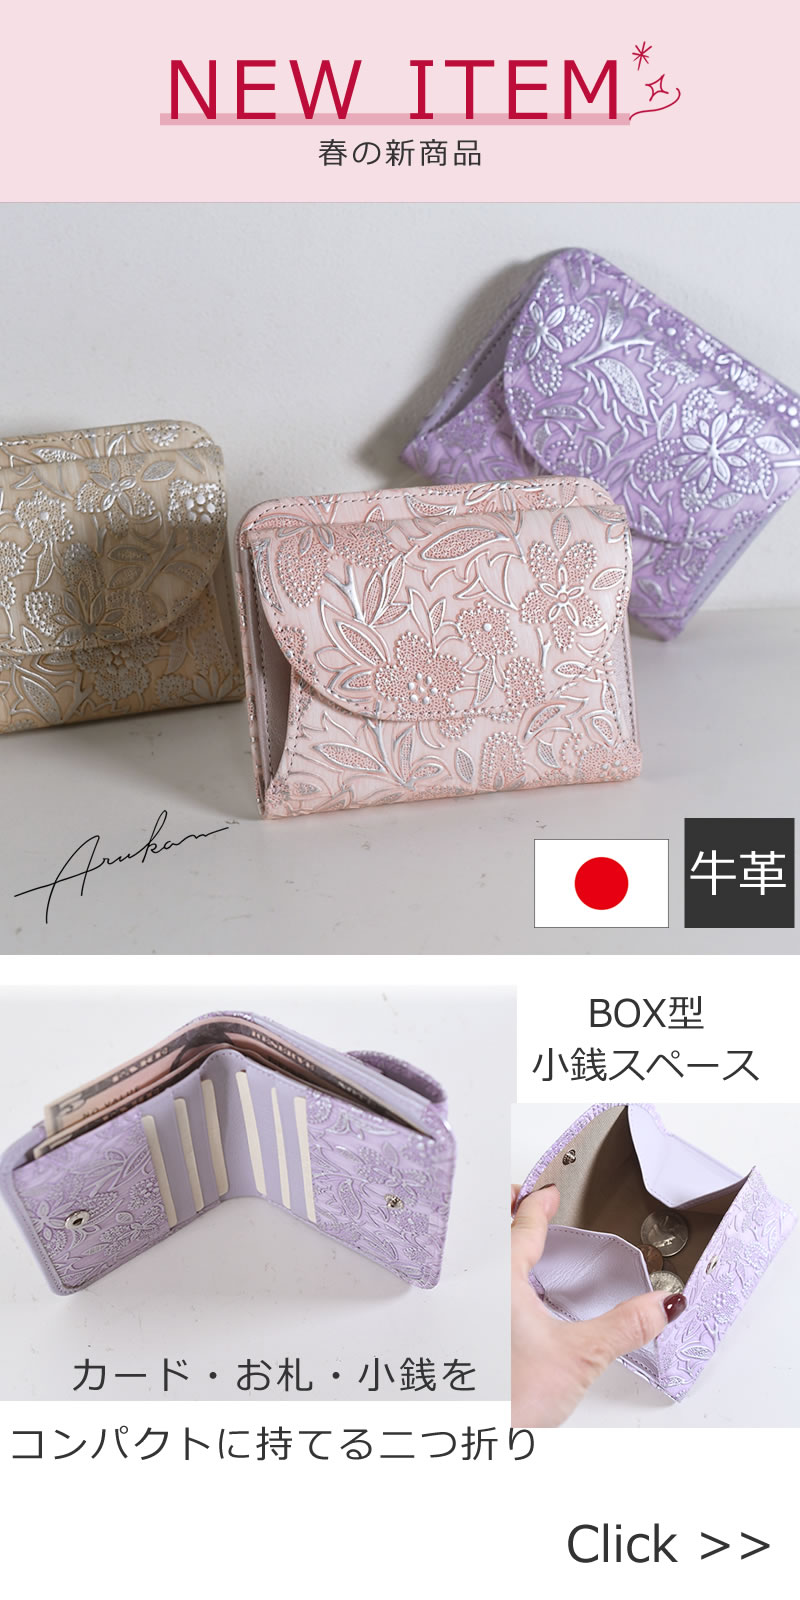 Arukanクリアシリーズ パステルカラーが可憐な印象の日本製本革二つ折り財布 1412697